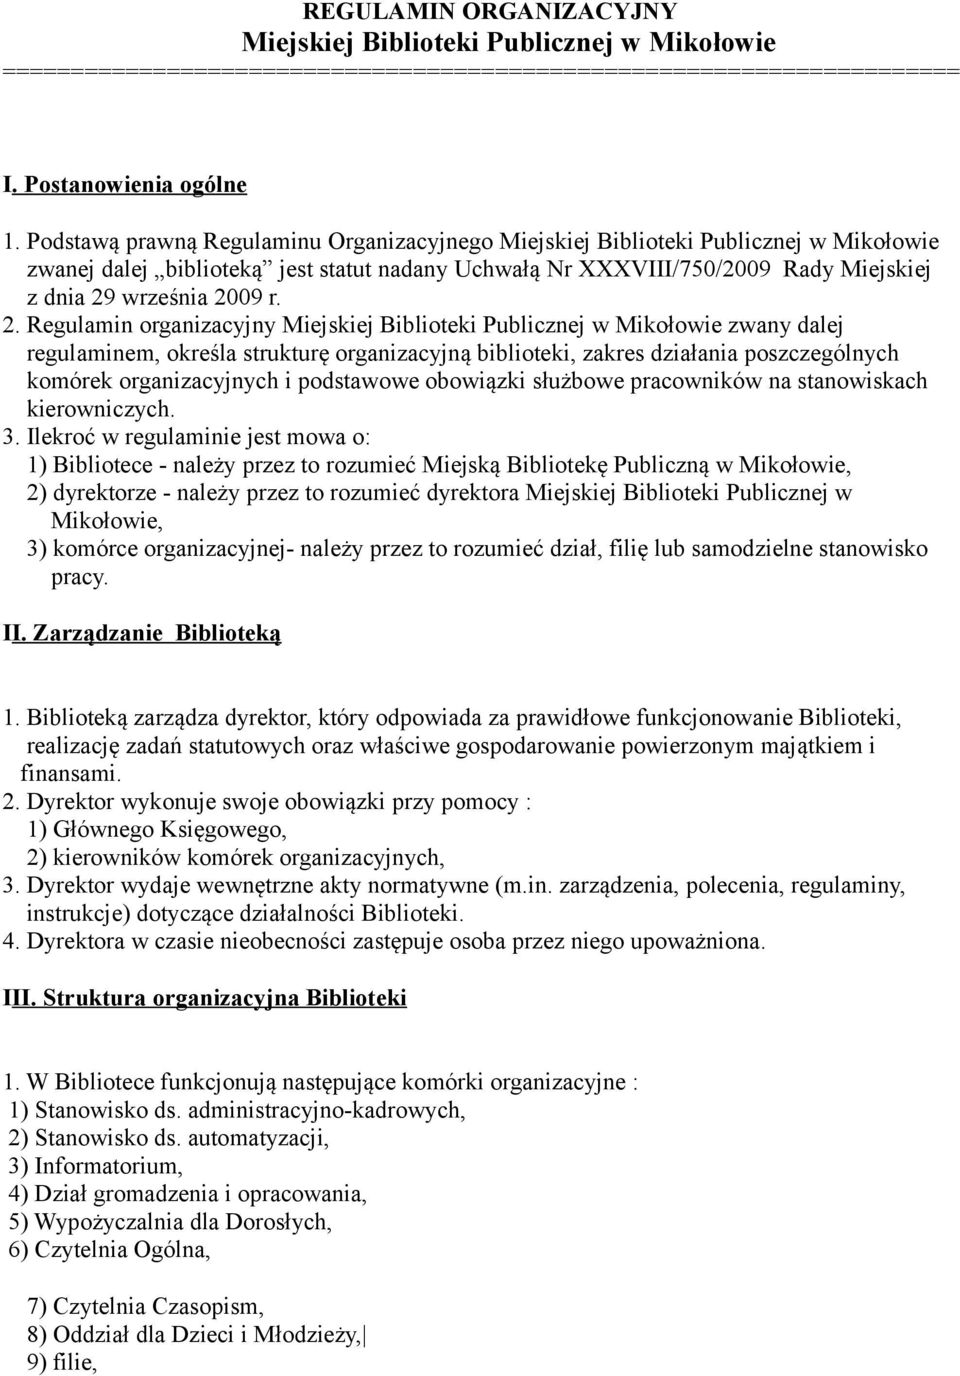 2. Regulamin organizacyjny Miejskiej Biblioteki Publicznej w Mikołowie zwany dalej regulaminem, określa strukturę organizacyjną biblioteki, zakres działania poszczególnych komórek organizacyjnych i